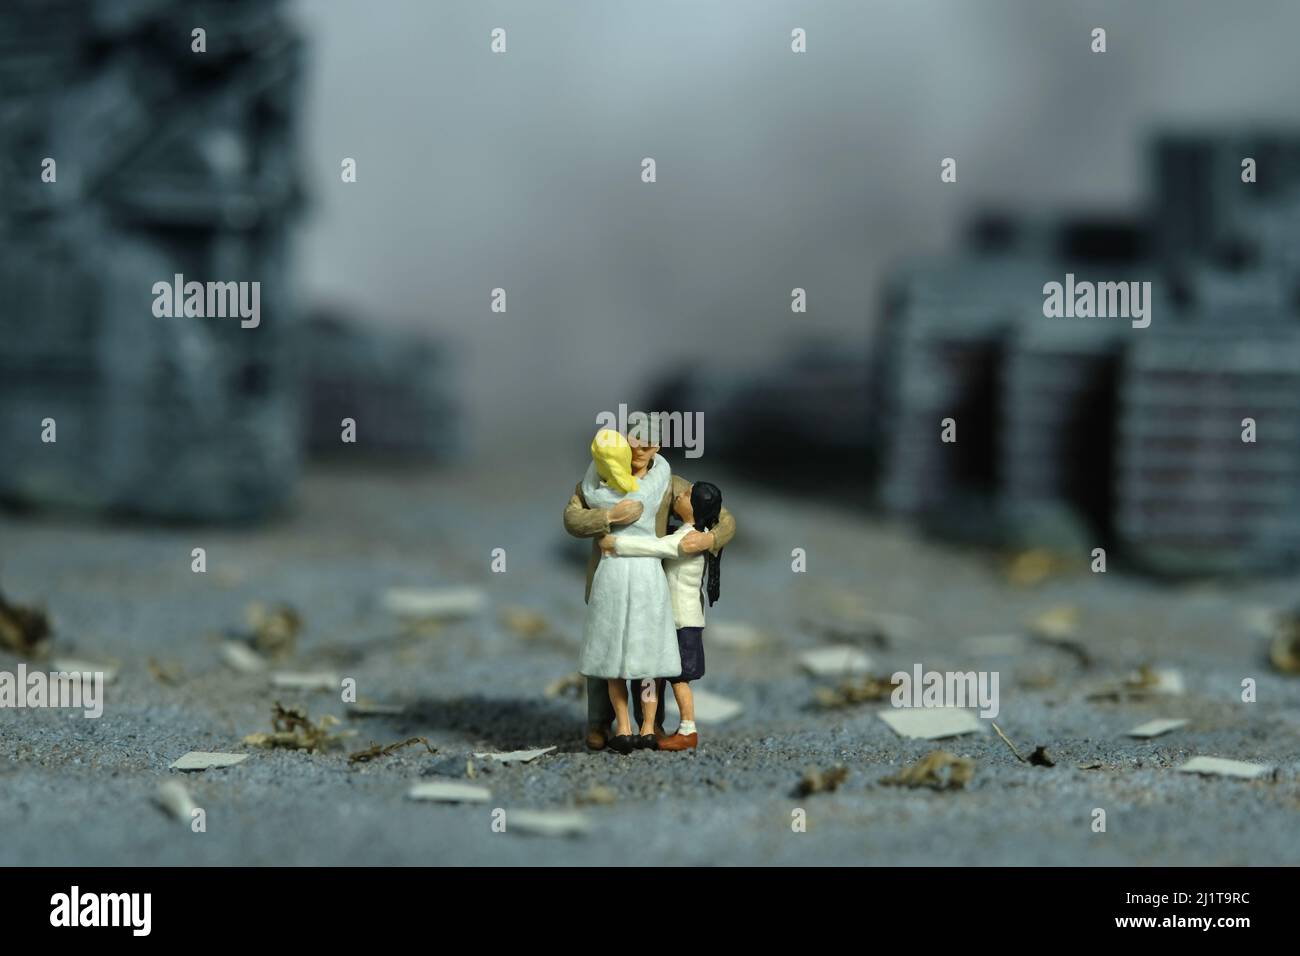 Miniatur Menschen Spielzeug Figur Fotografie. Konzept für Familientreffen. Der Vater umarmte seine Frau und seine Tochter mitten in der zerstörten Stadt. Bild pho Stockfoto